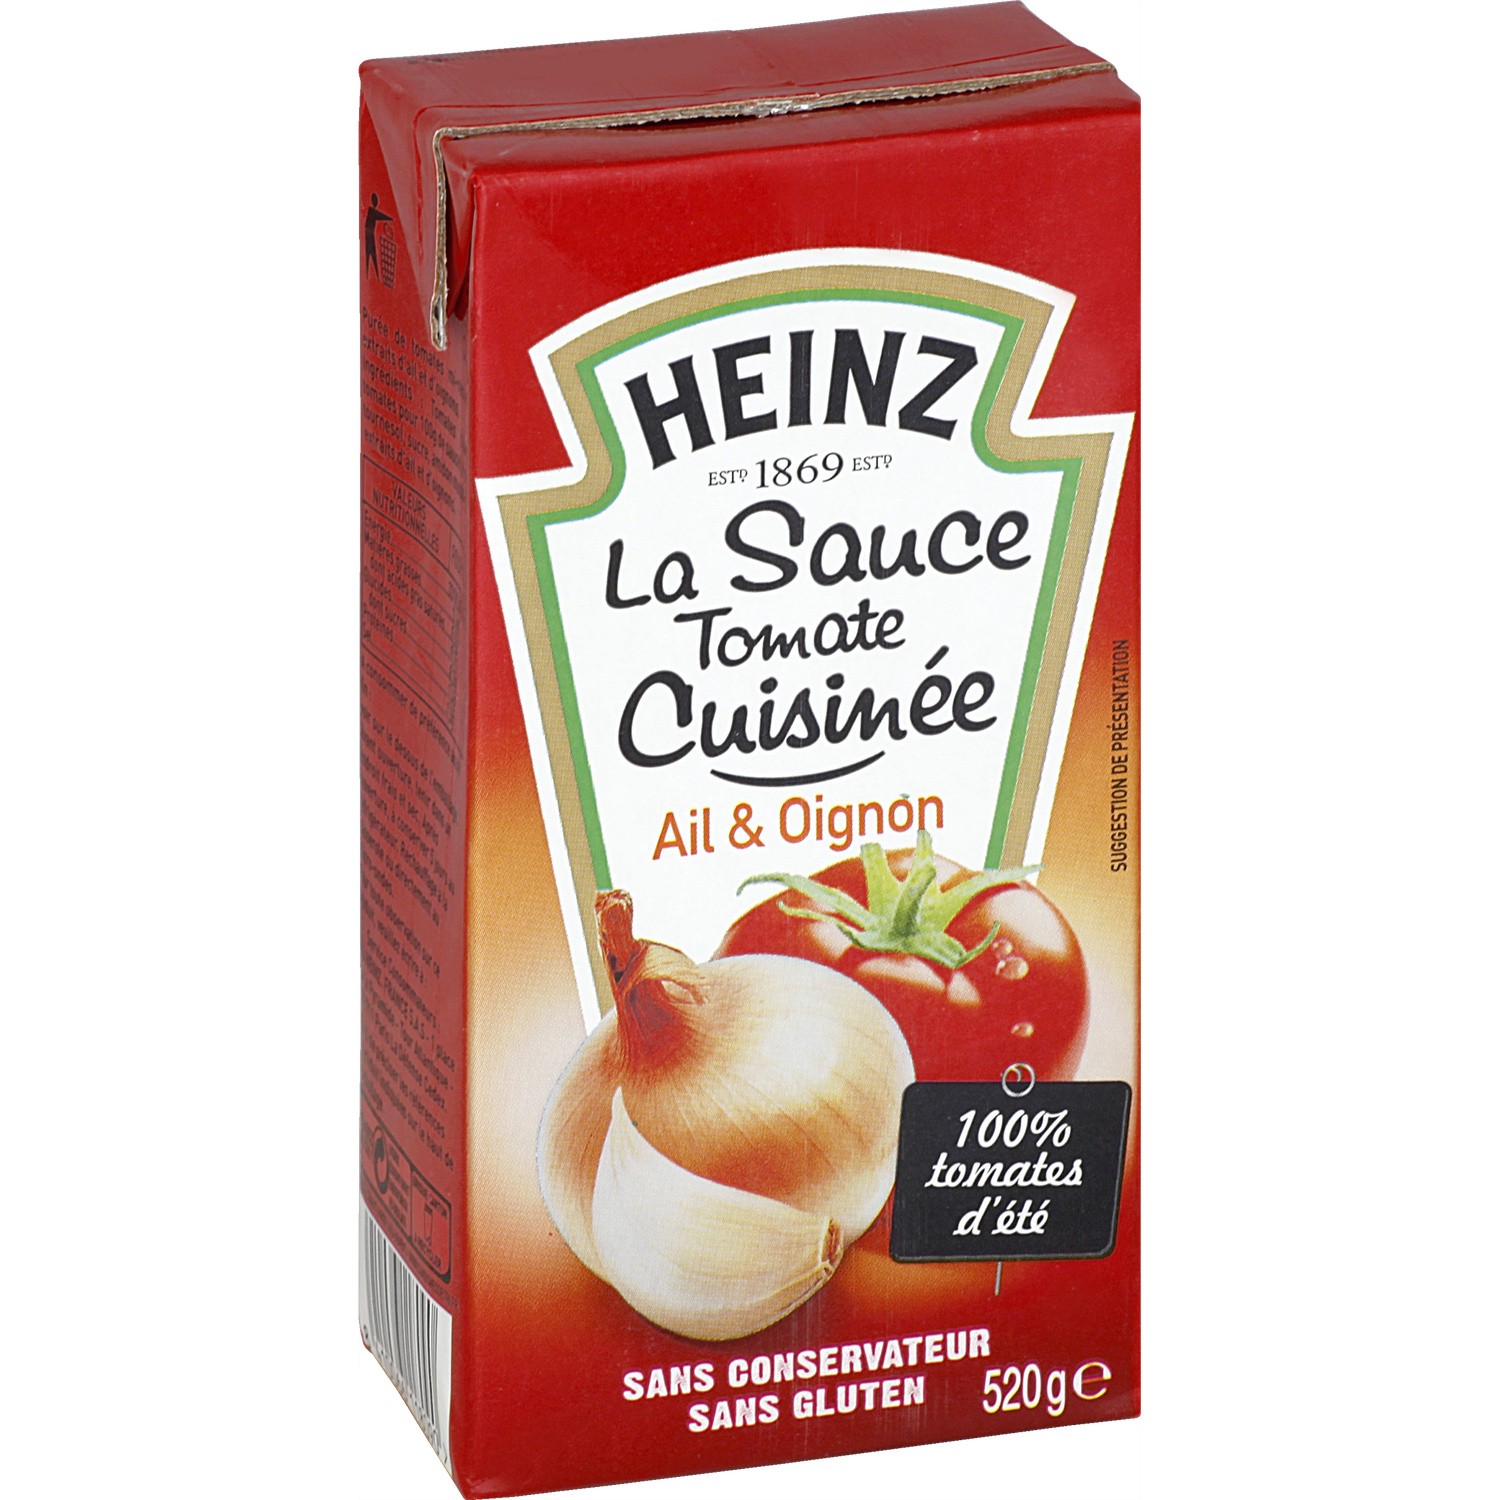 La Sauce Tomate Cuisinée Ail & Oignon